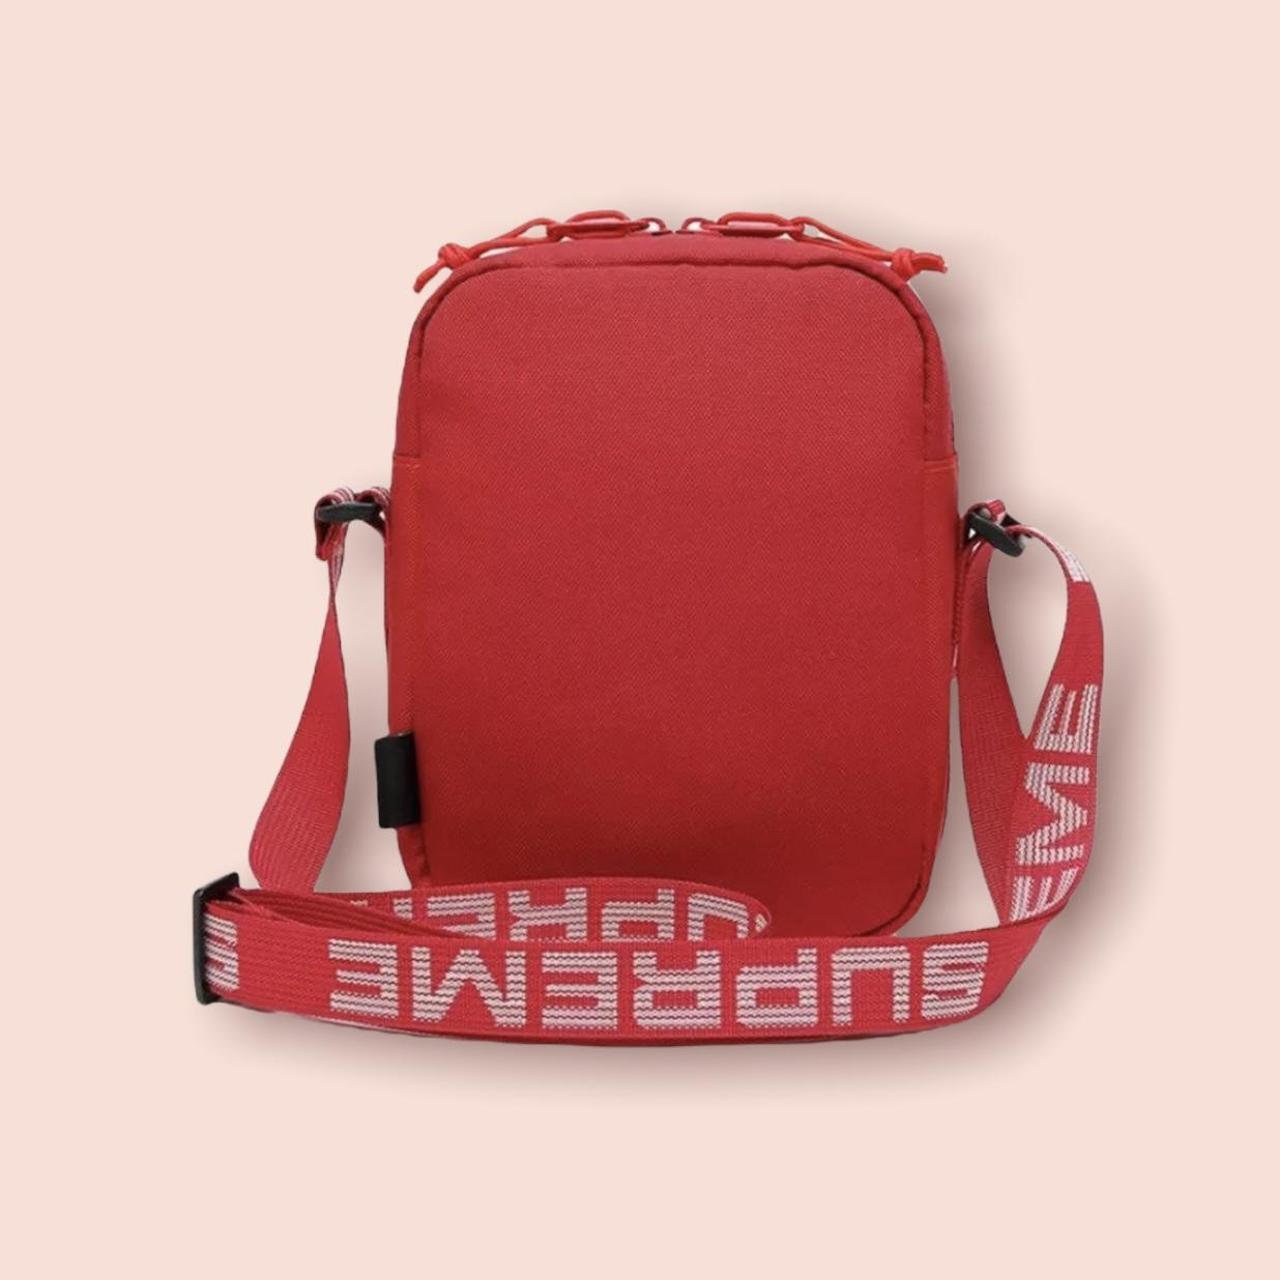 Supreme Shoulder Bag (SS18) - Red Messenger Bags, Bags